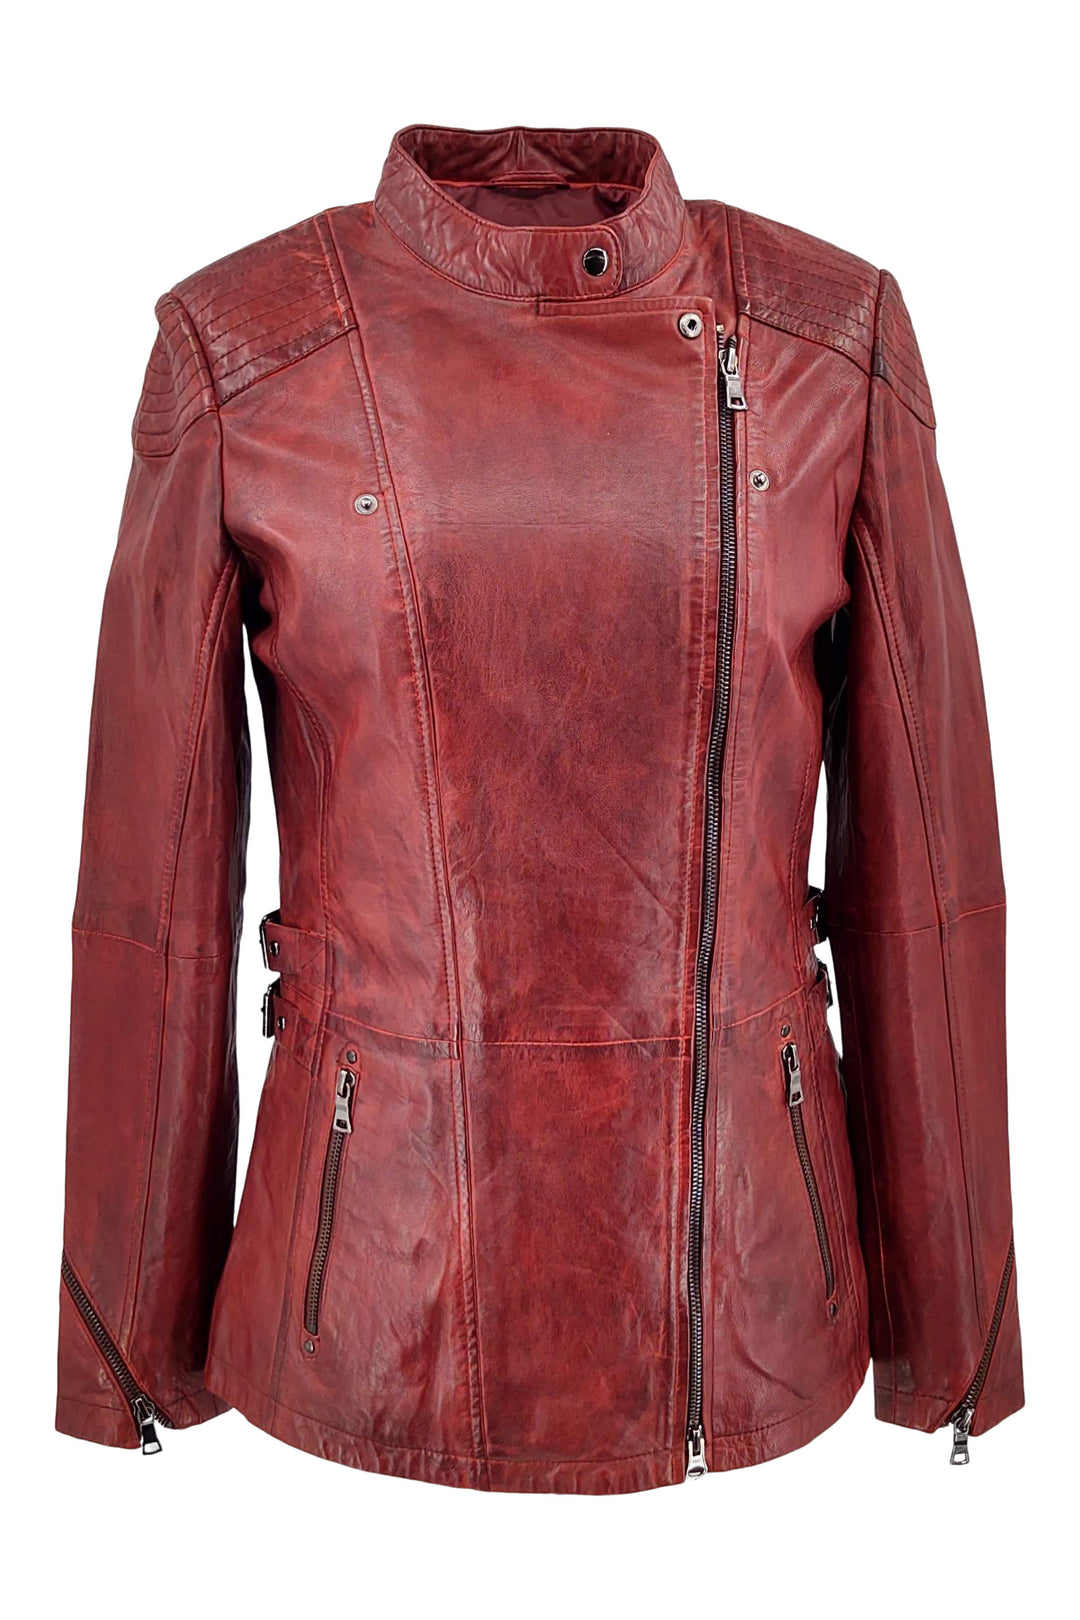 Floyd - Lamb Copper Leather - Women - Red / Læder Skinds Jakke - Levinsky - Kvinde | STAMPE PELS